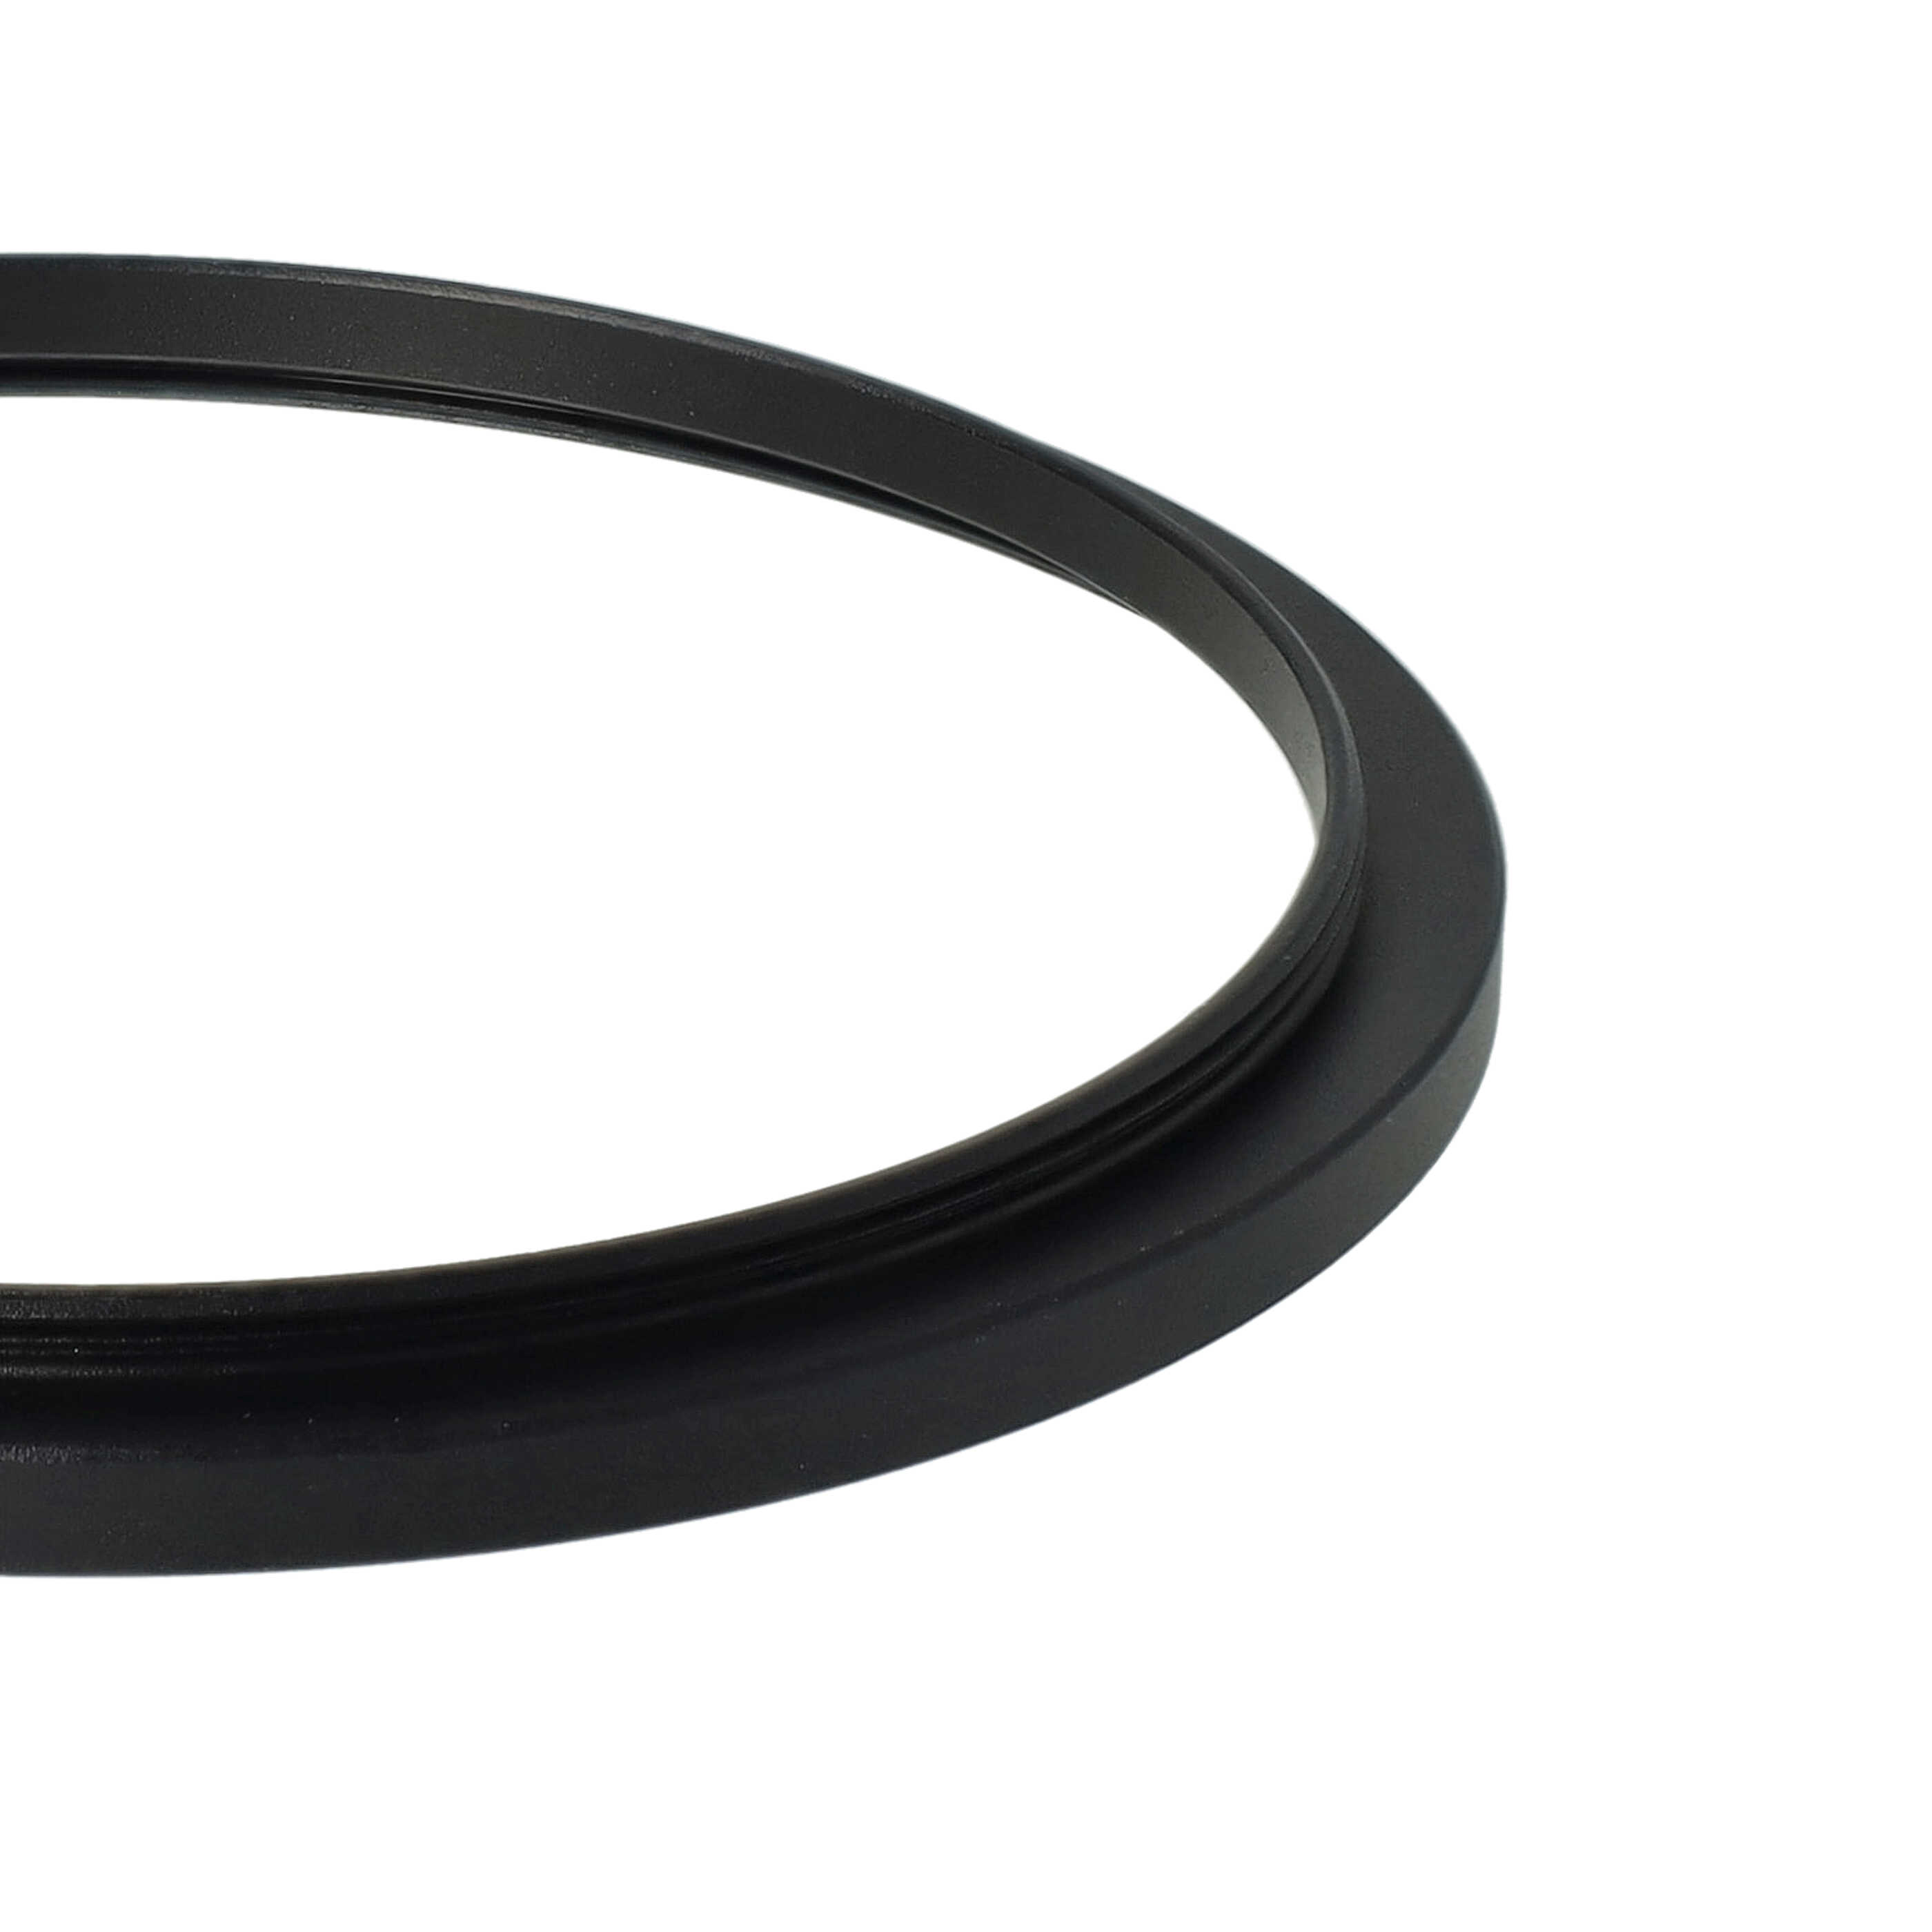 Step-Up-Ring Adapter 72 mm auf 77 mm passend für diverse Kamera-Objektive - Filteradapter